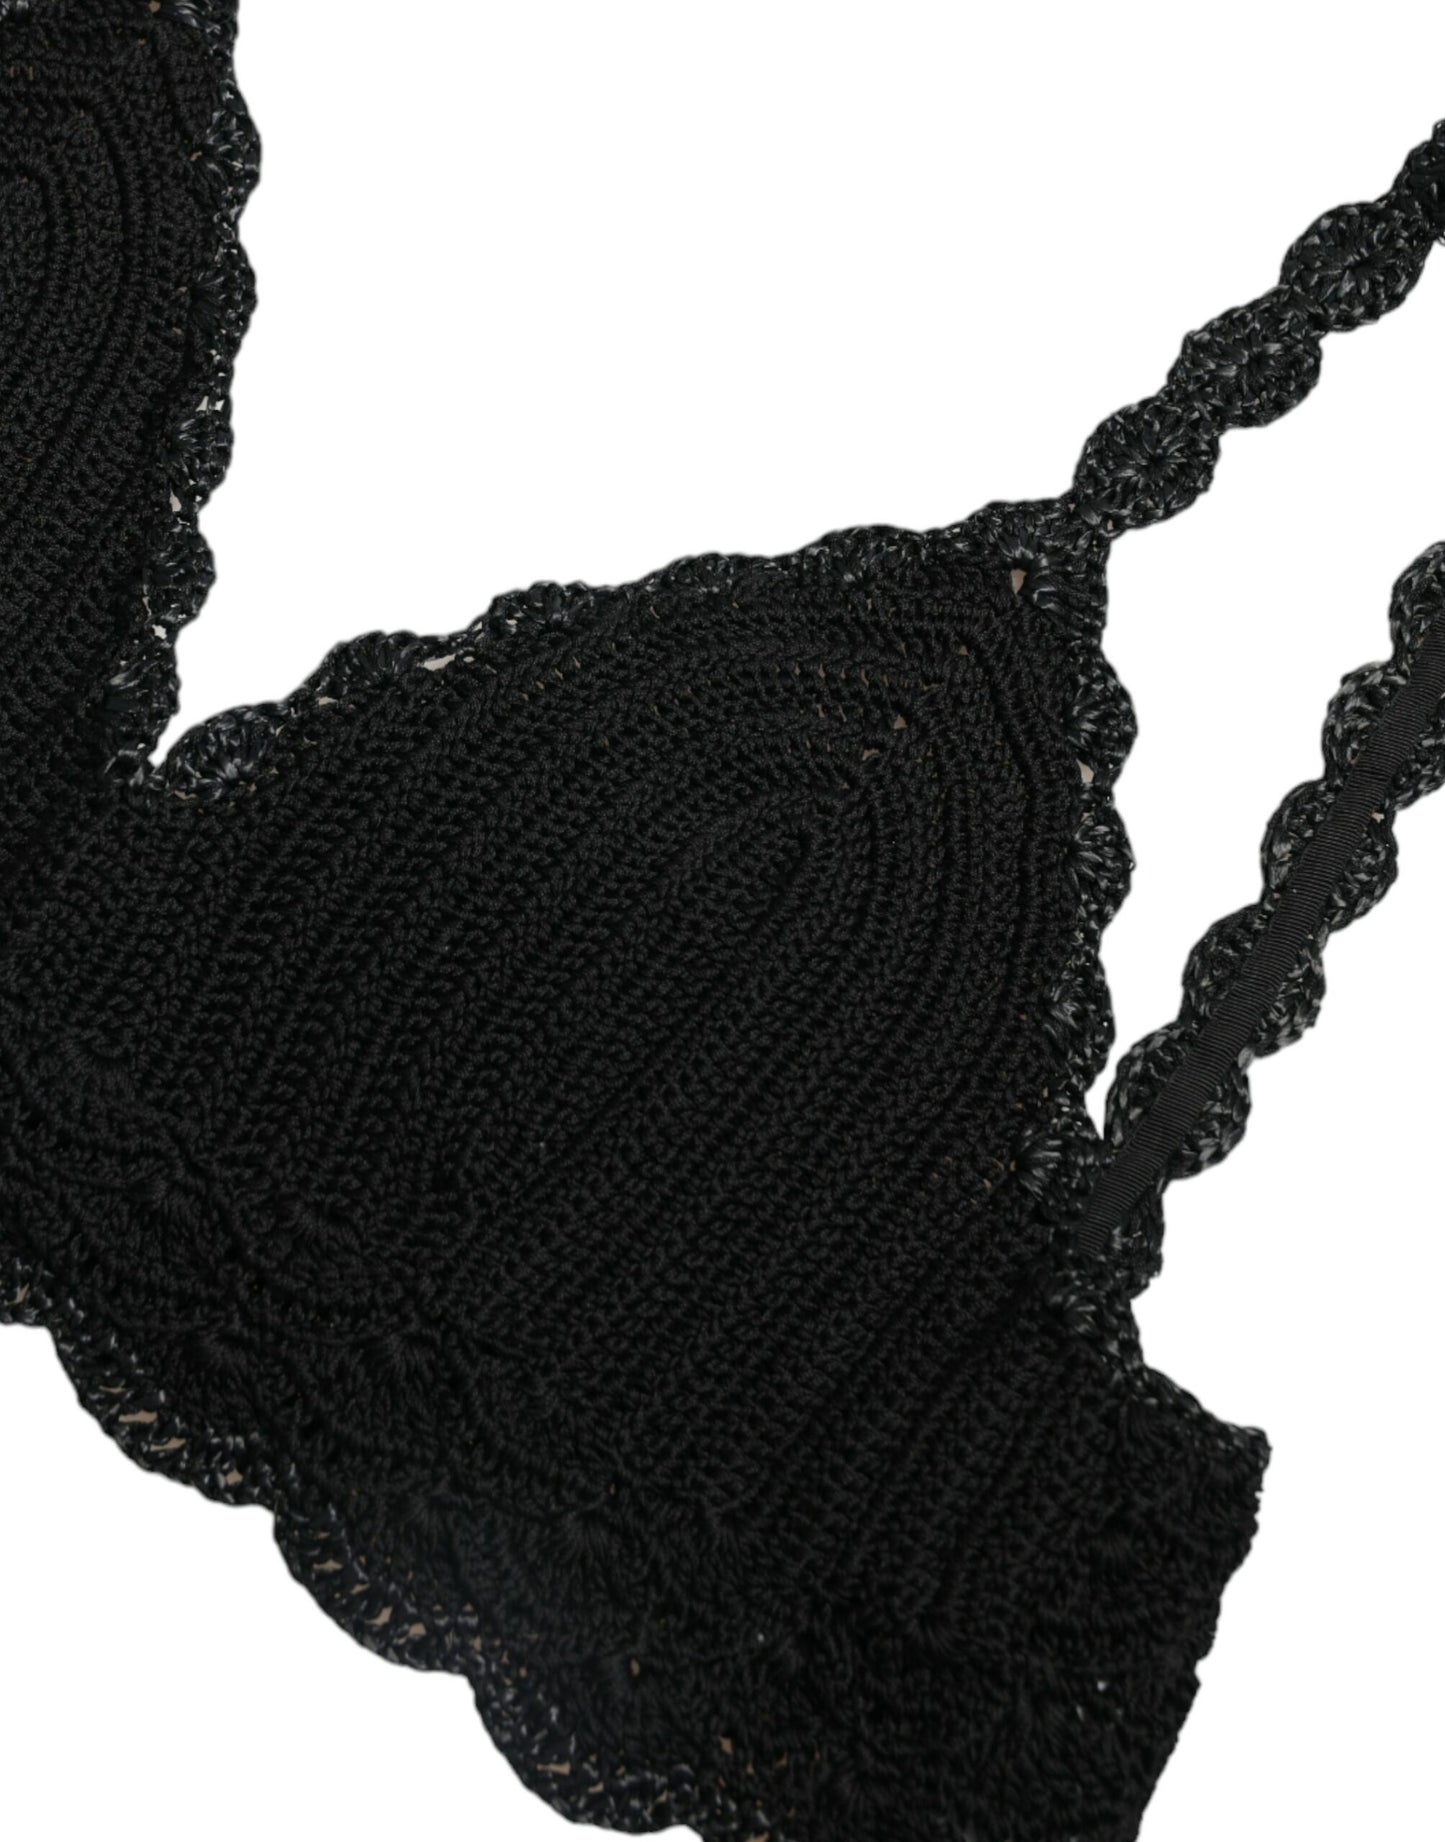 Elegant Black Crochet Corset Top